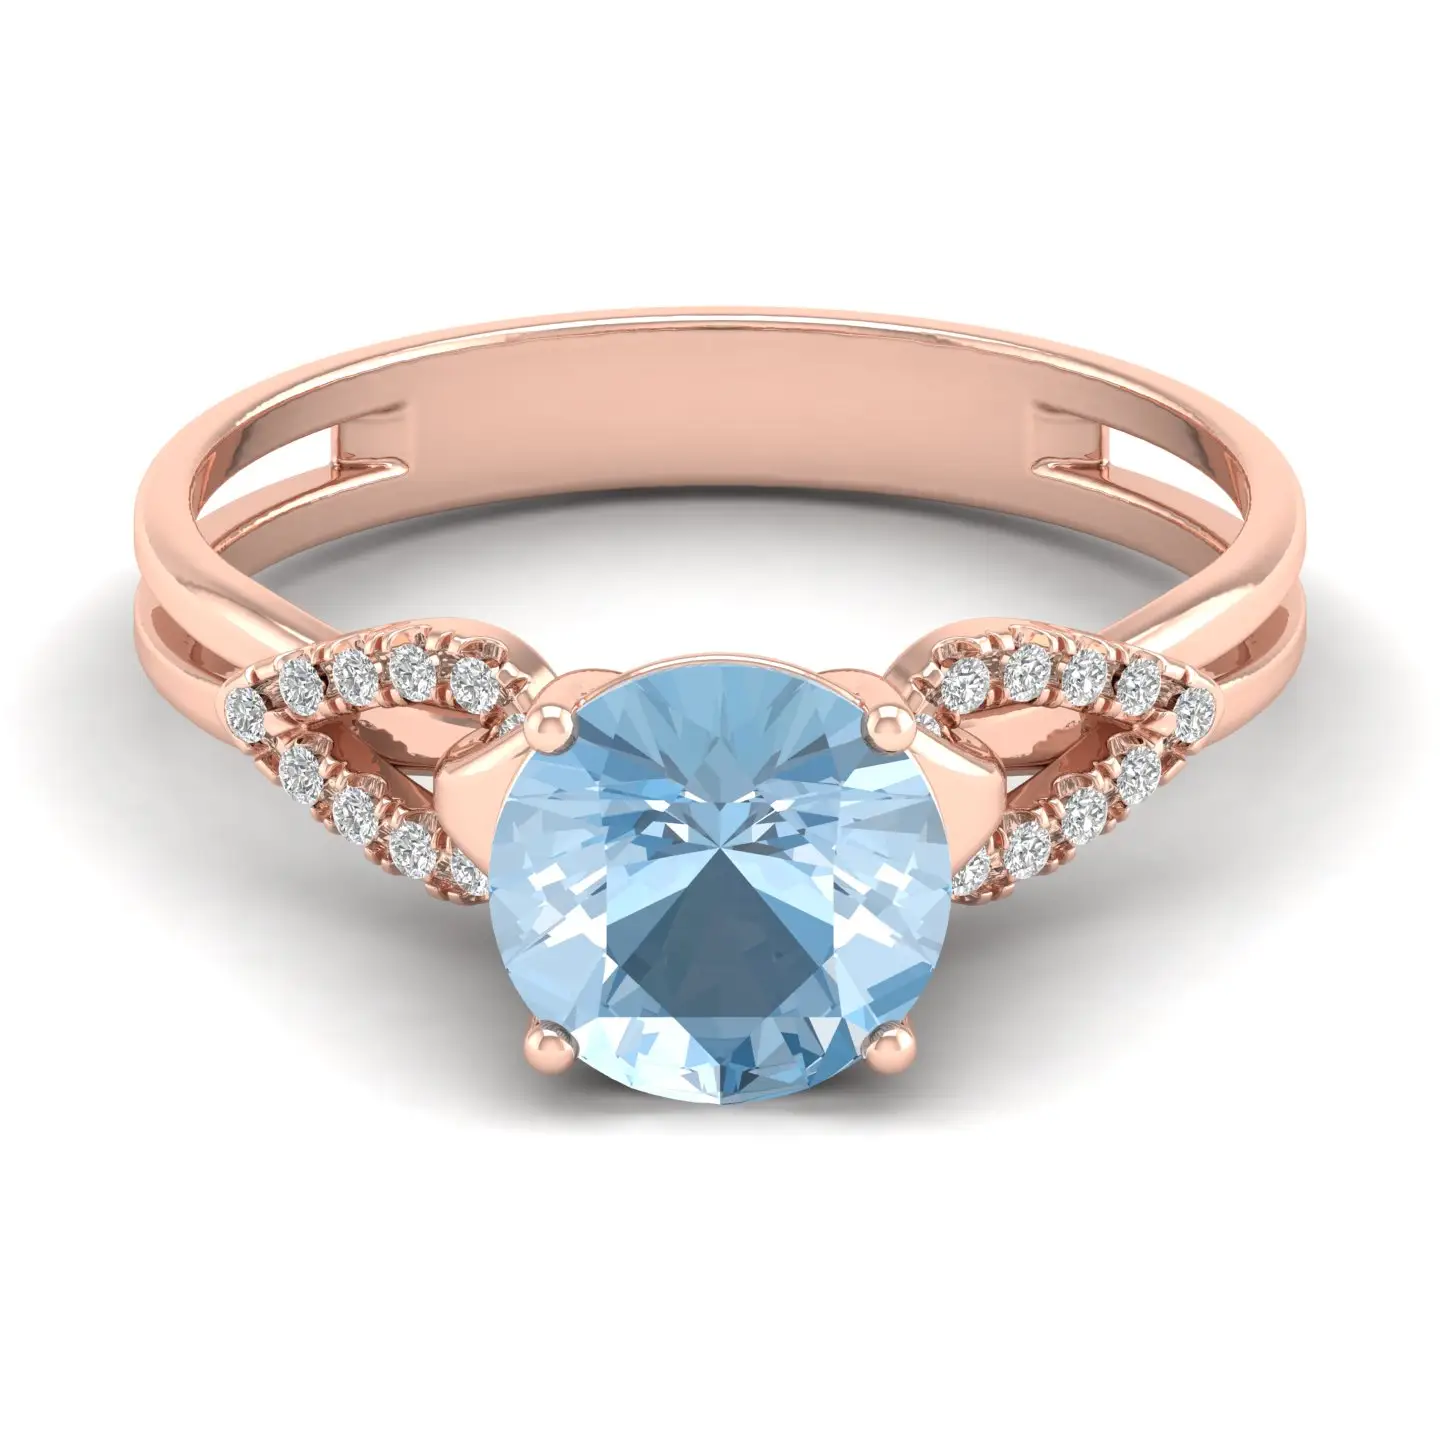 Natürlicher IGI Diamant Halbe del stein Aquamarin Edelstein Massive Roségold Ringe Hand gefertigte Silbers chmuck Exporteure aus Indien